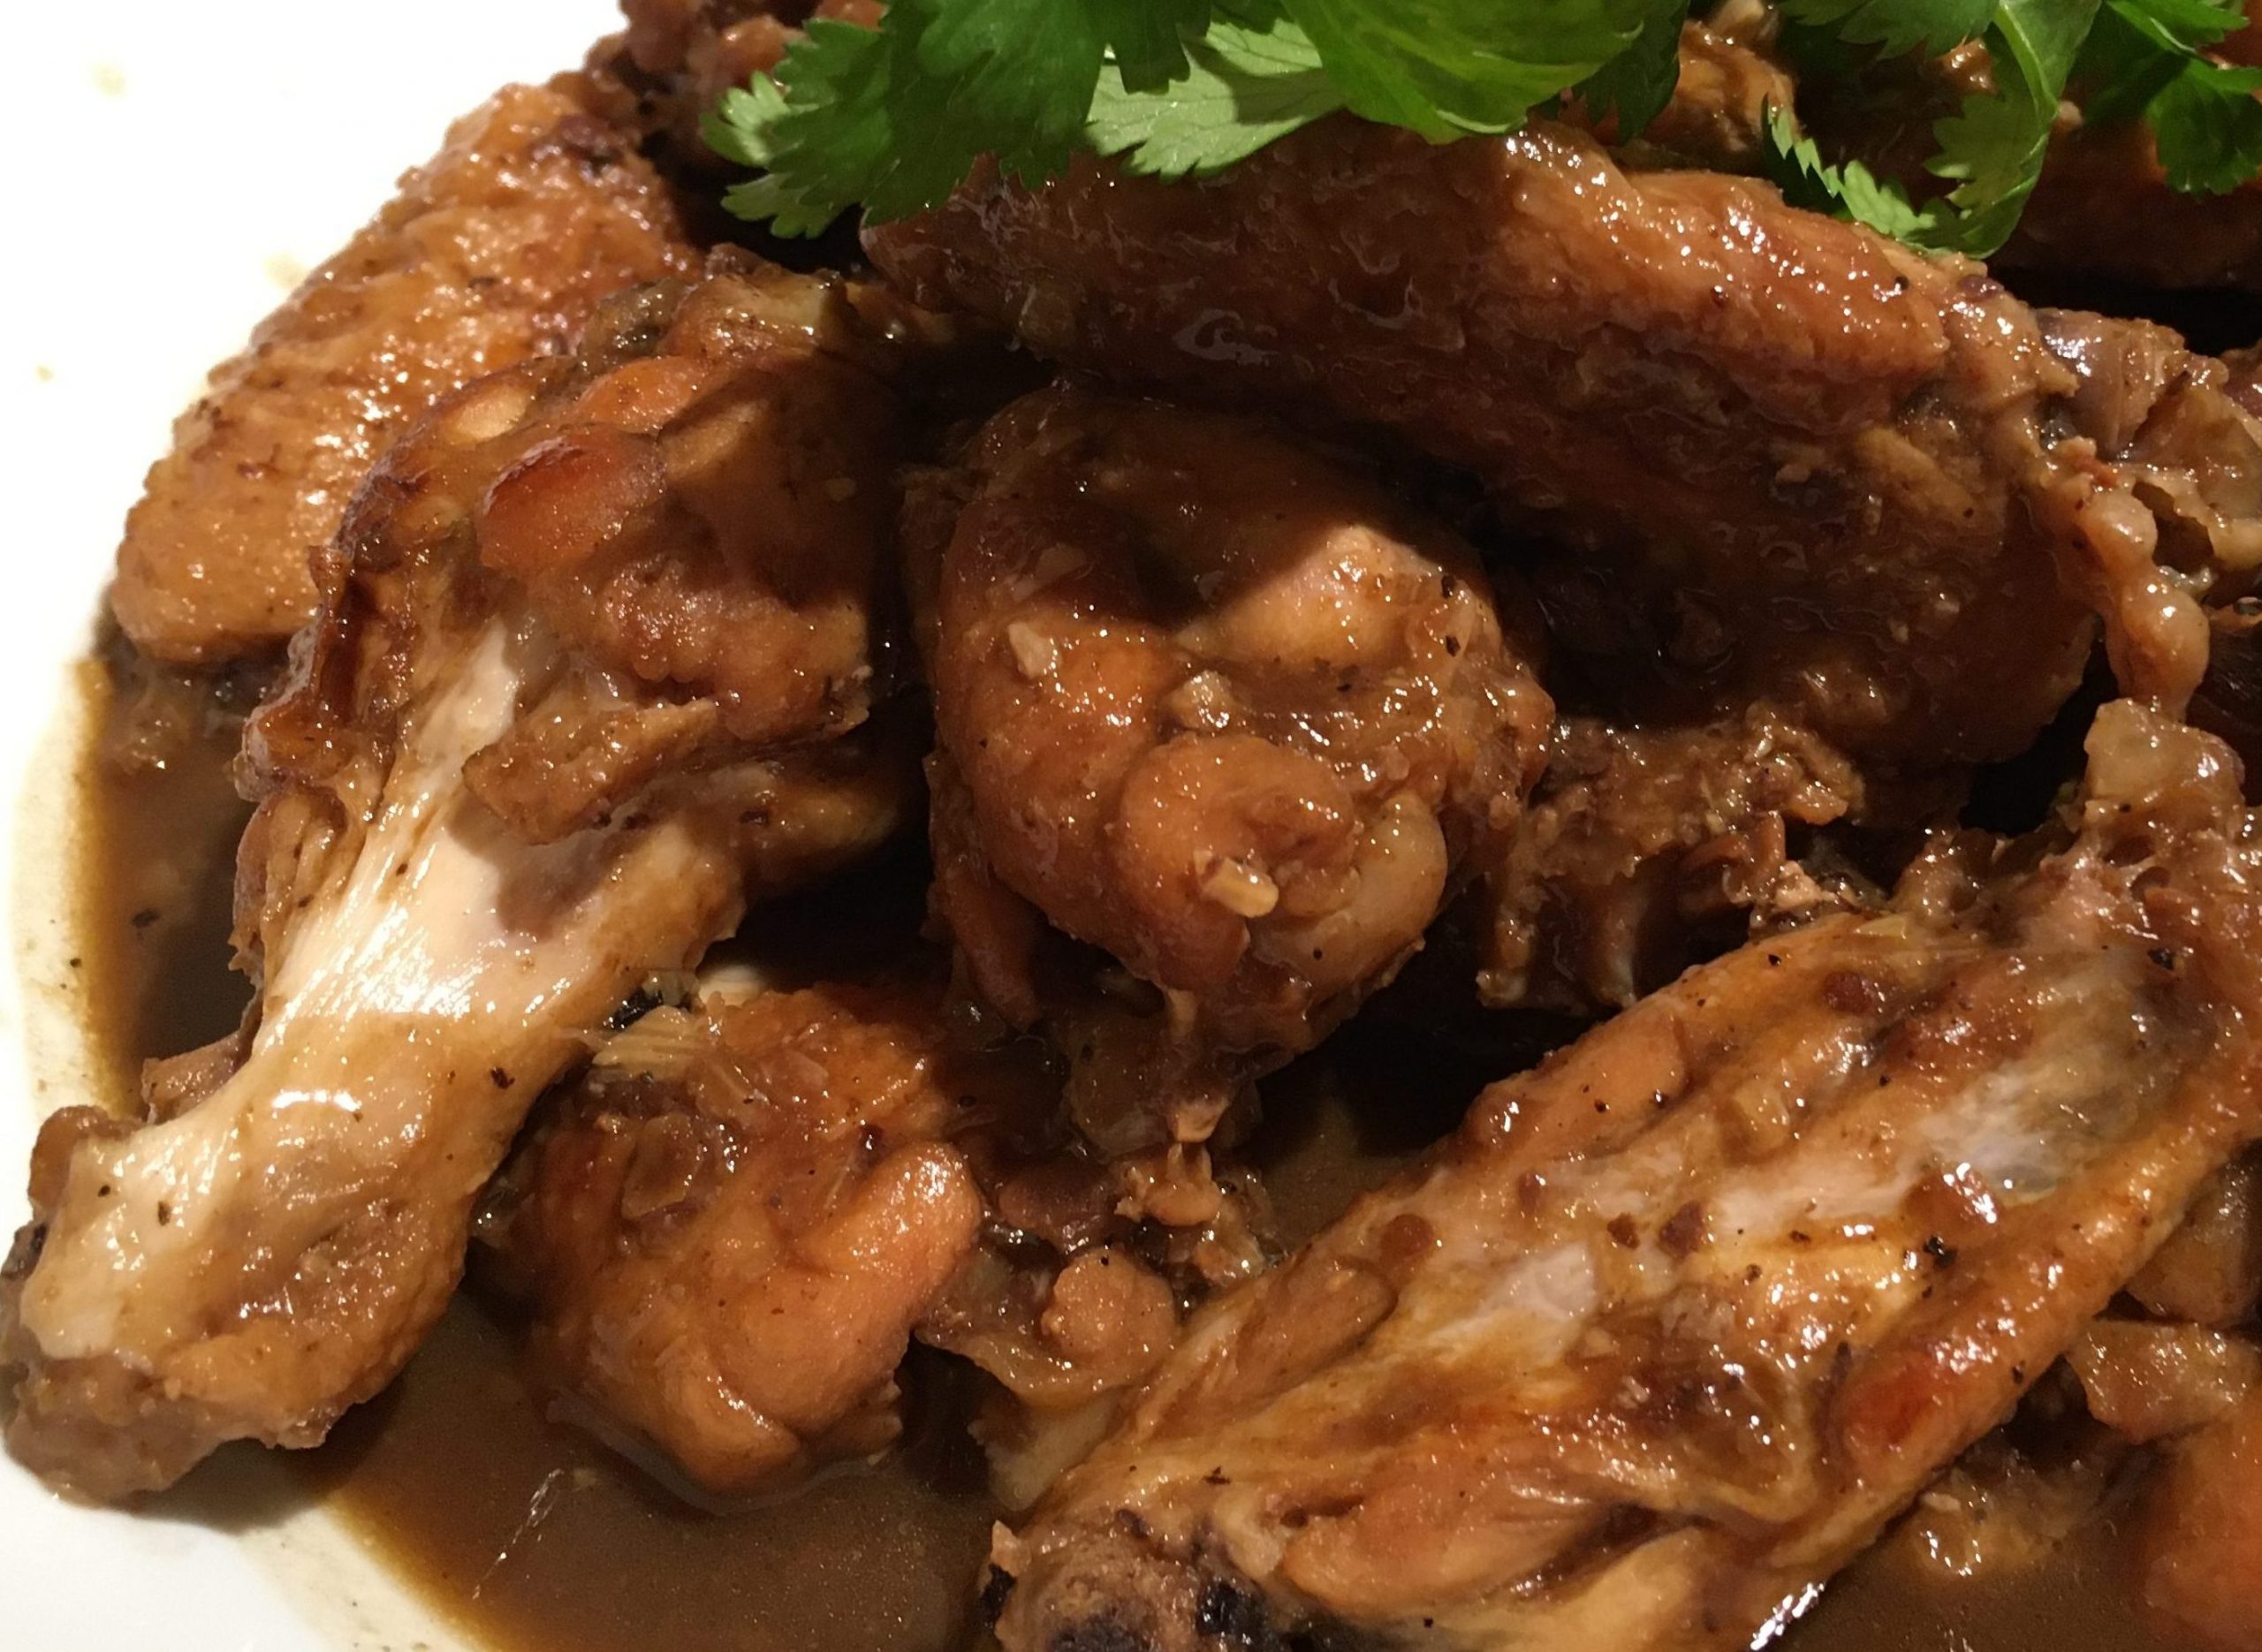 Hakka braised chicken wings in bean sauce